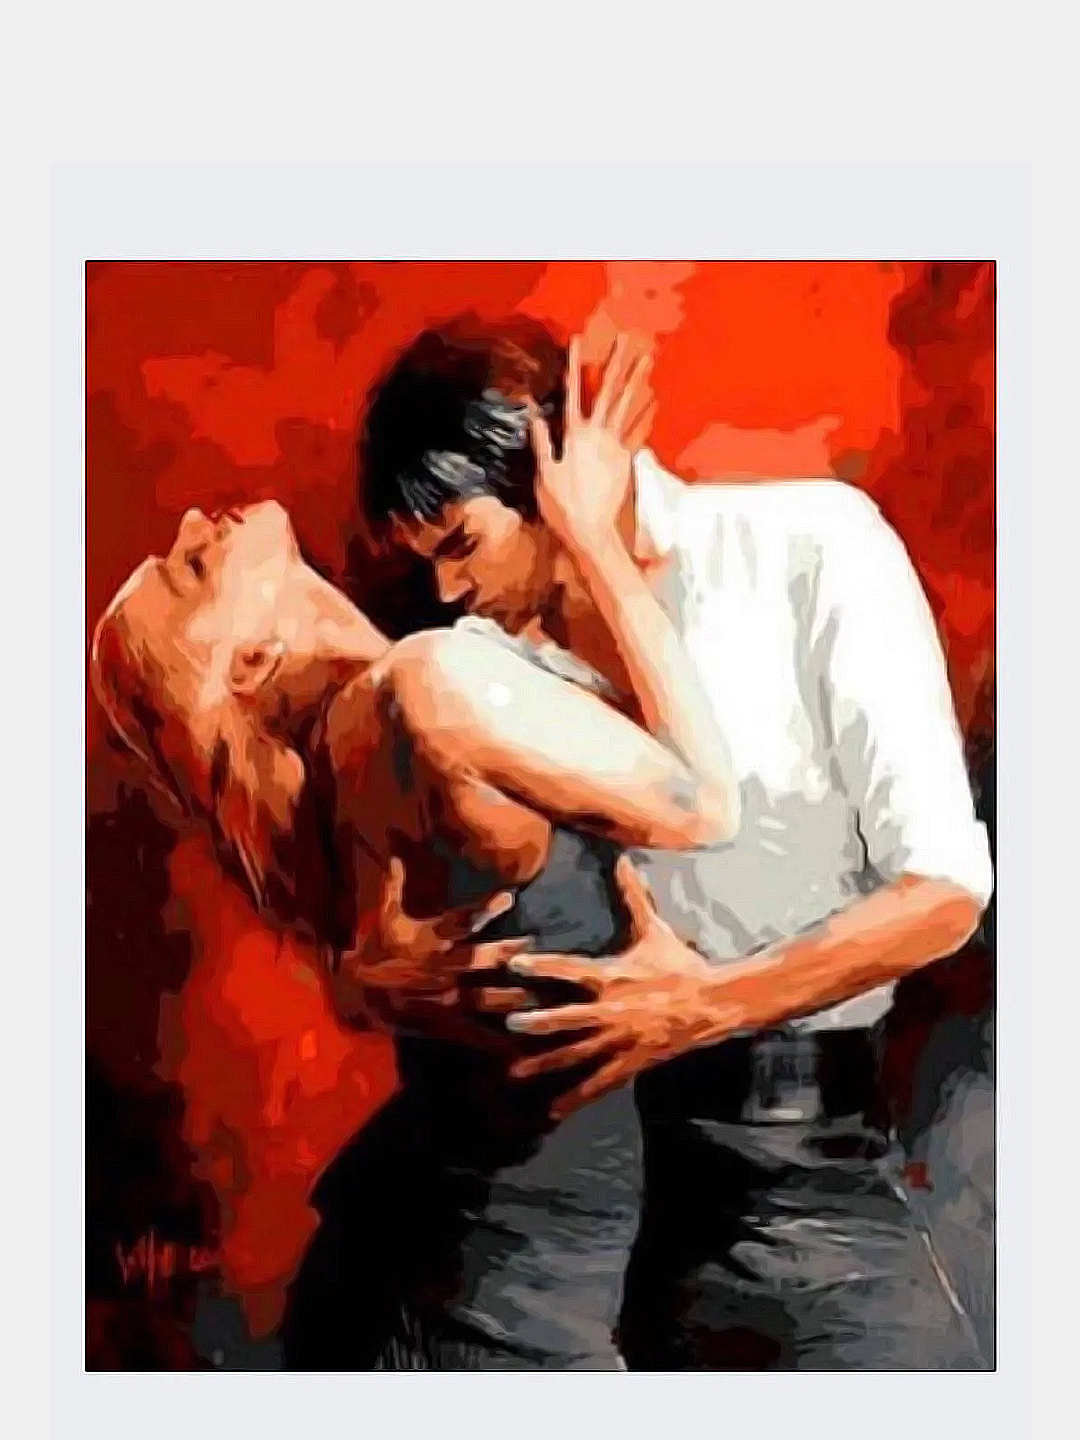 Чувственный танец. Виллем Хаенрайтс художник танго. Художник Willem Haenraets танго. Страсть живопись. Картина "любовь".